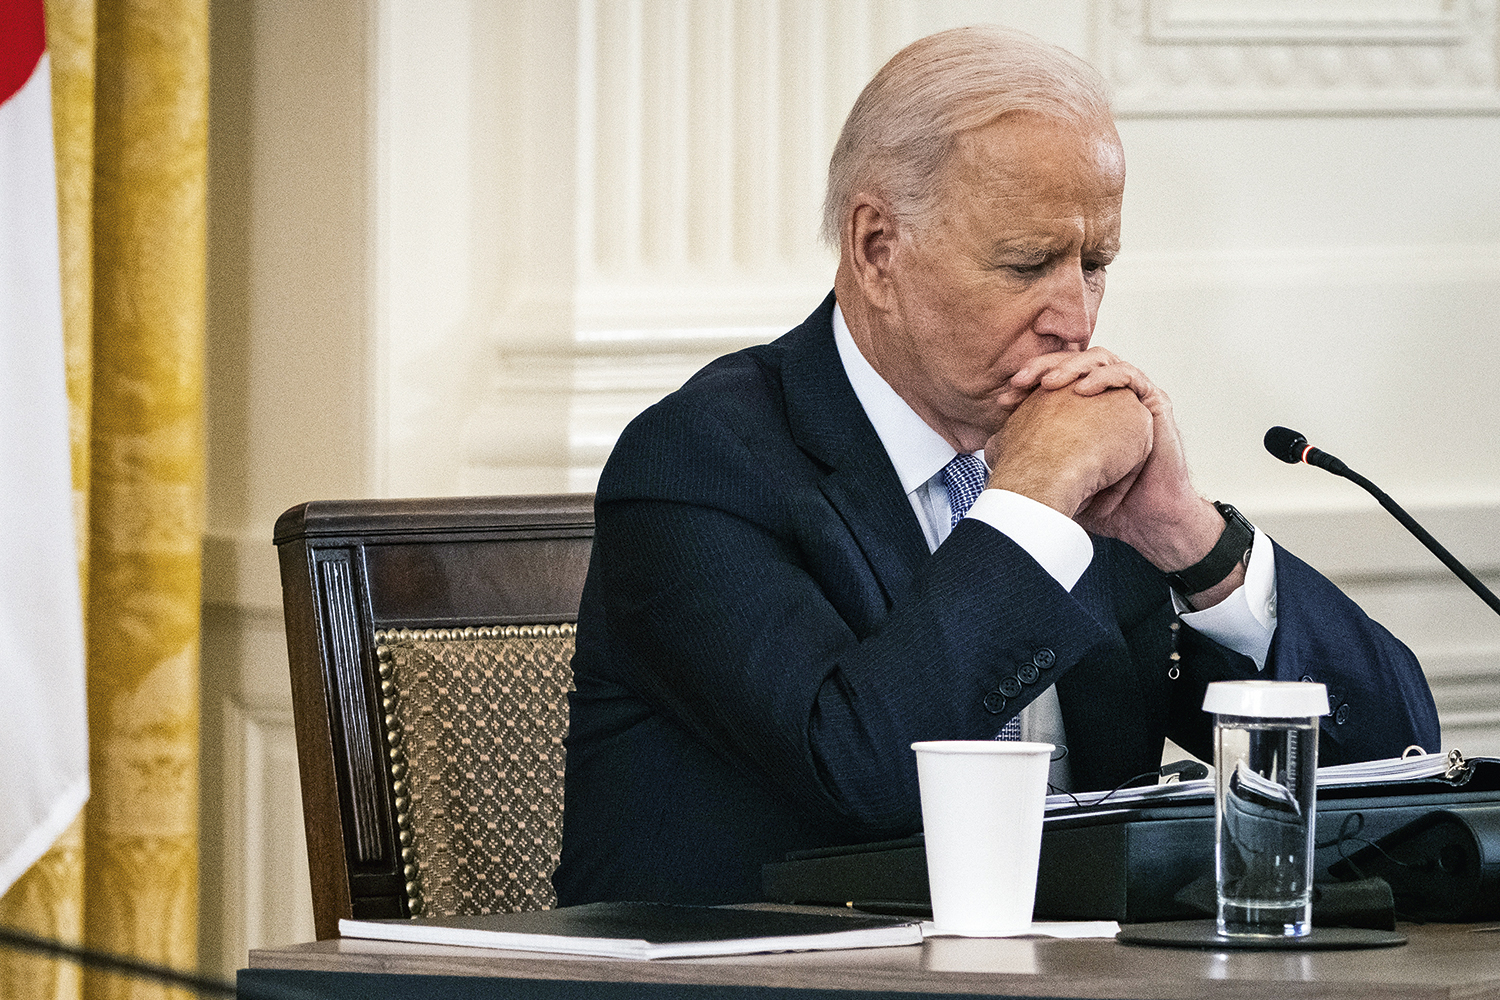 O fim da lua de mel de Joe Biden no governo americano | VEJA